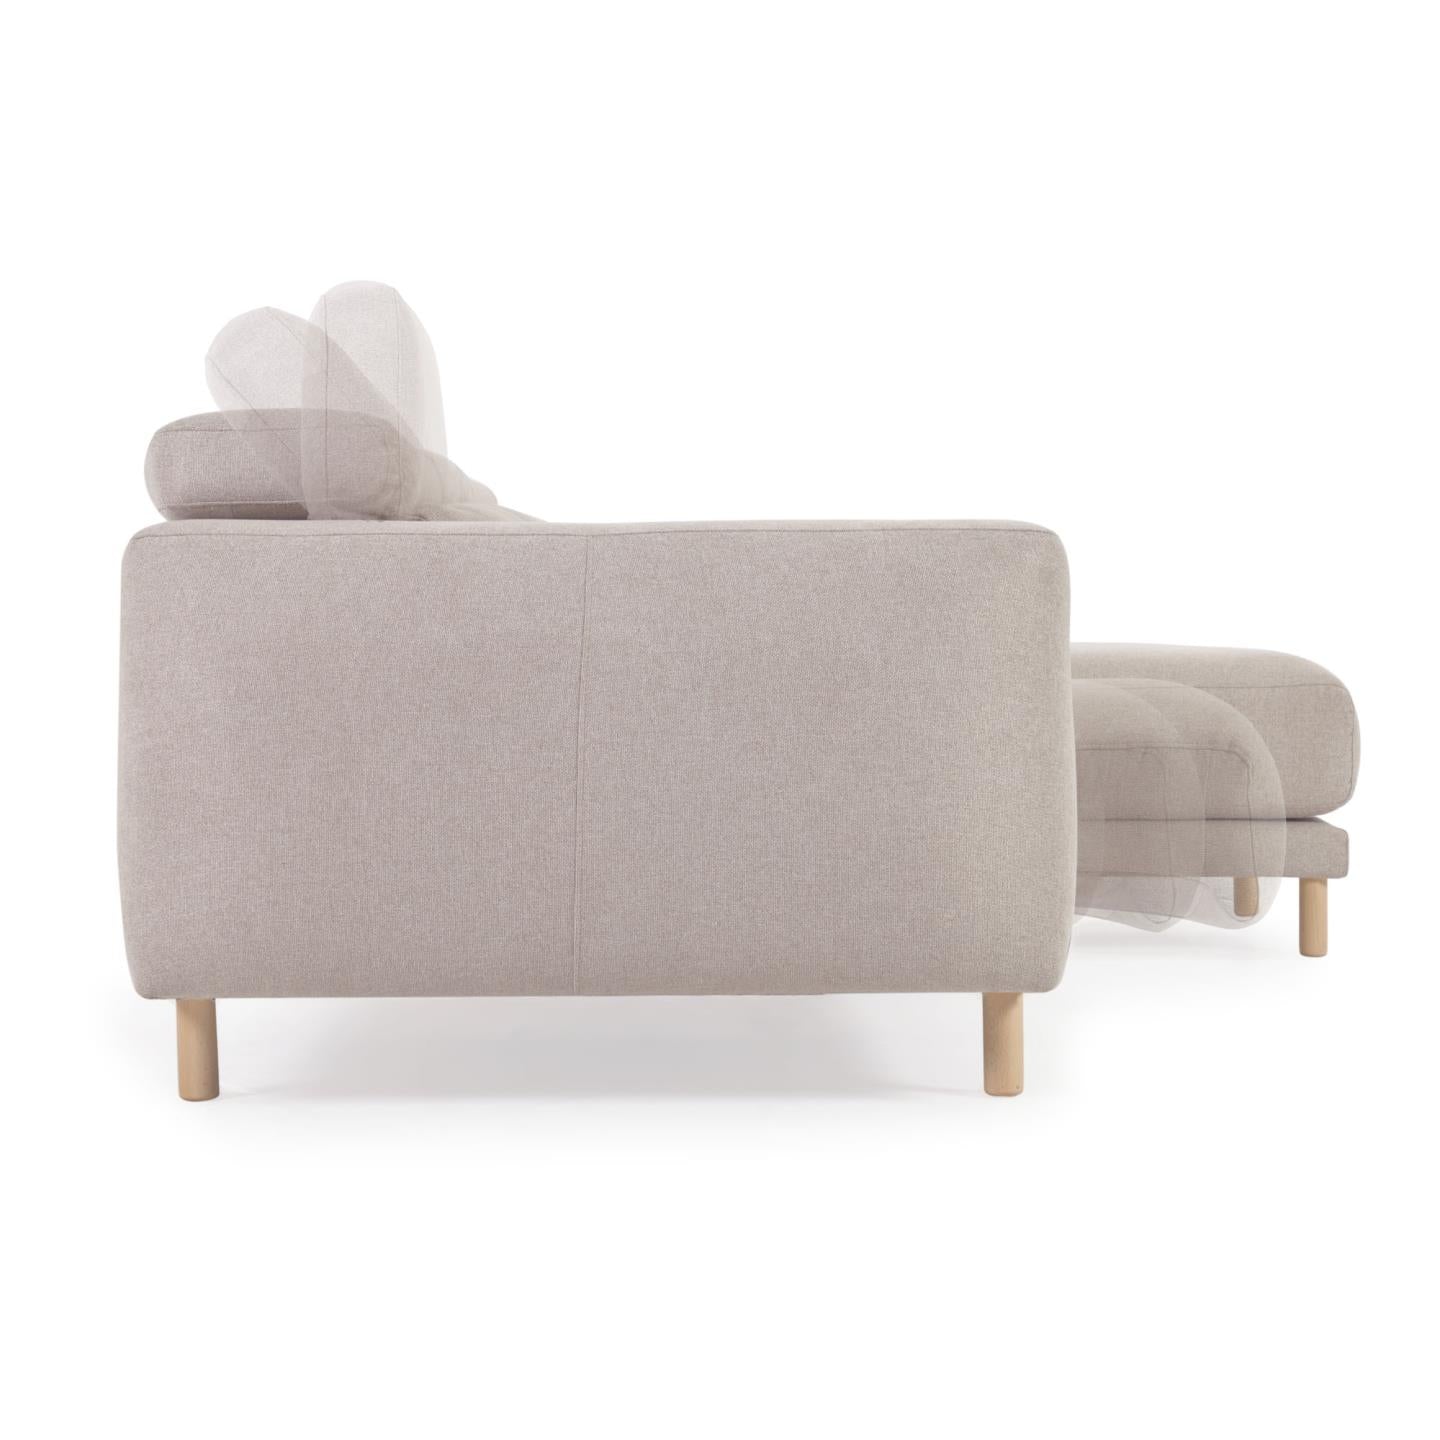 Singa 3 személyes kanapé jobb oldali fekvőfotellel, bézs színben, 296 cm